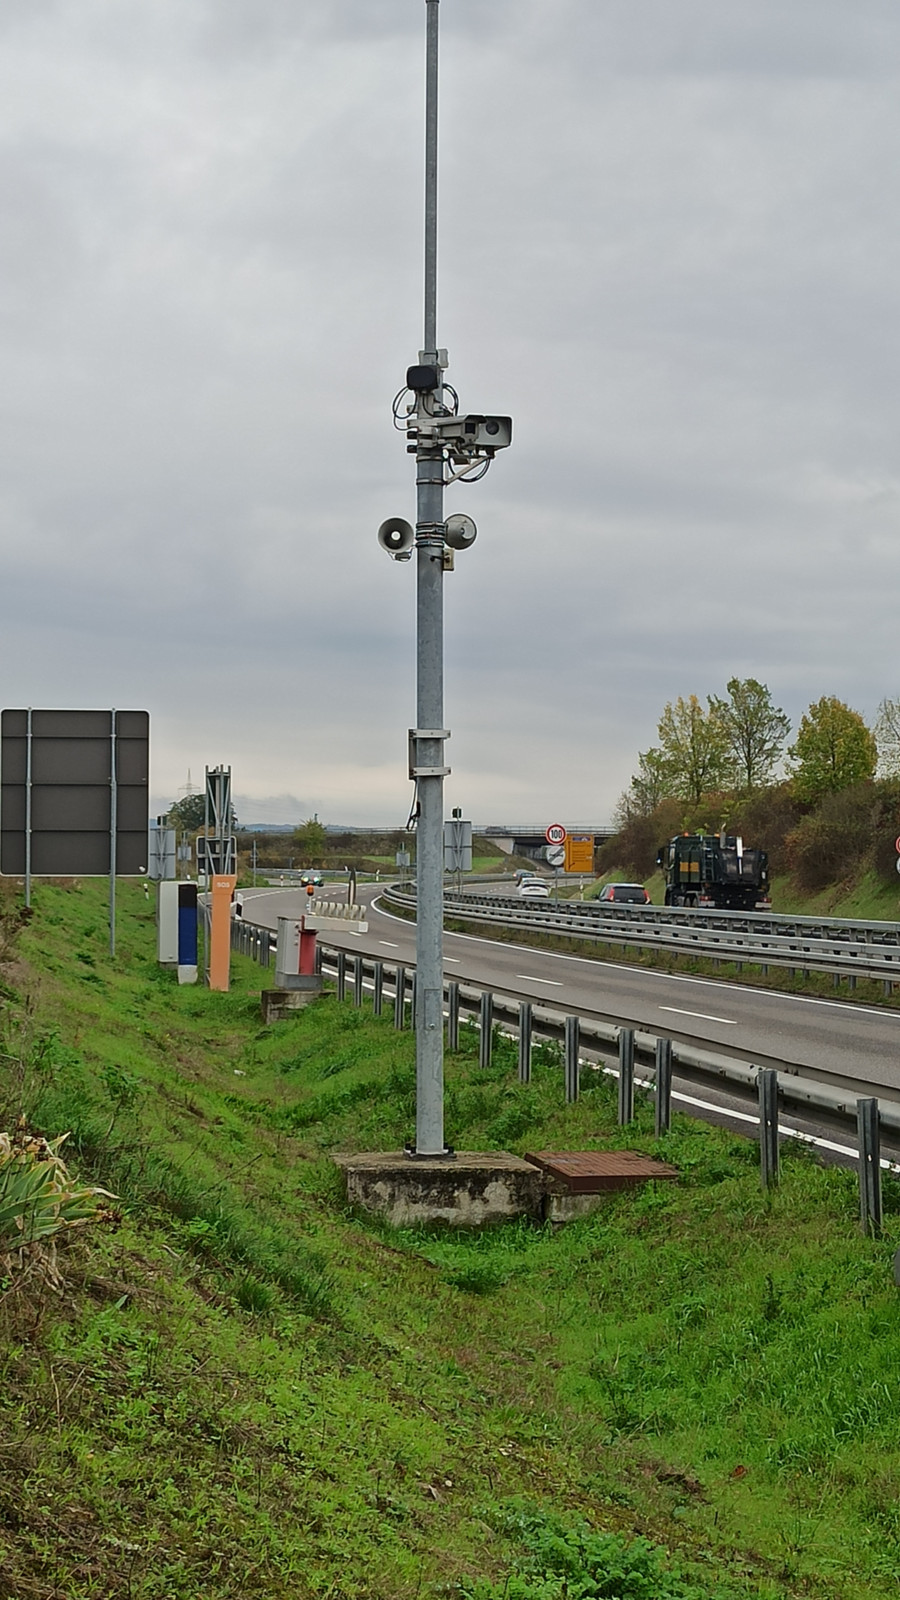 Der Tunnel an der B 535 bei Schwetzingen ist mit Lautsprechern für Durchsagen, Videoüberwachung und Schranken ausgestattet.